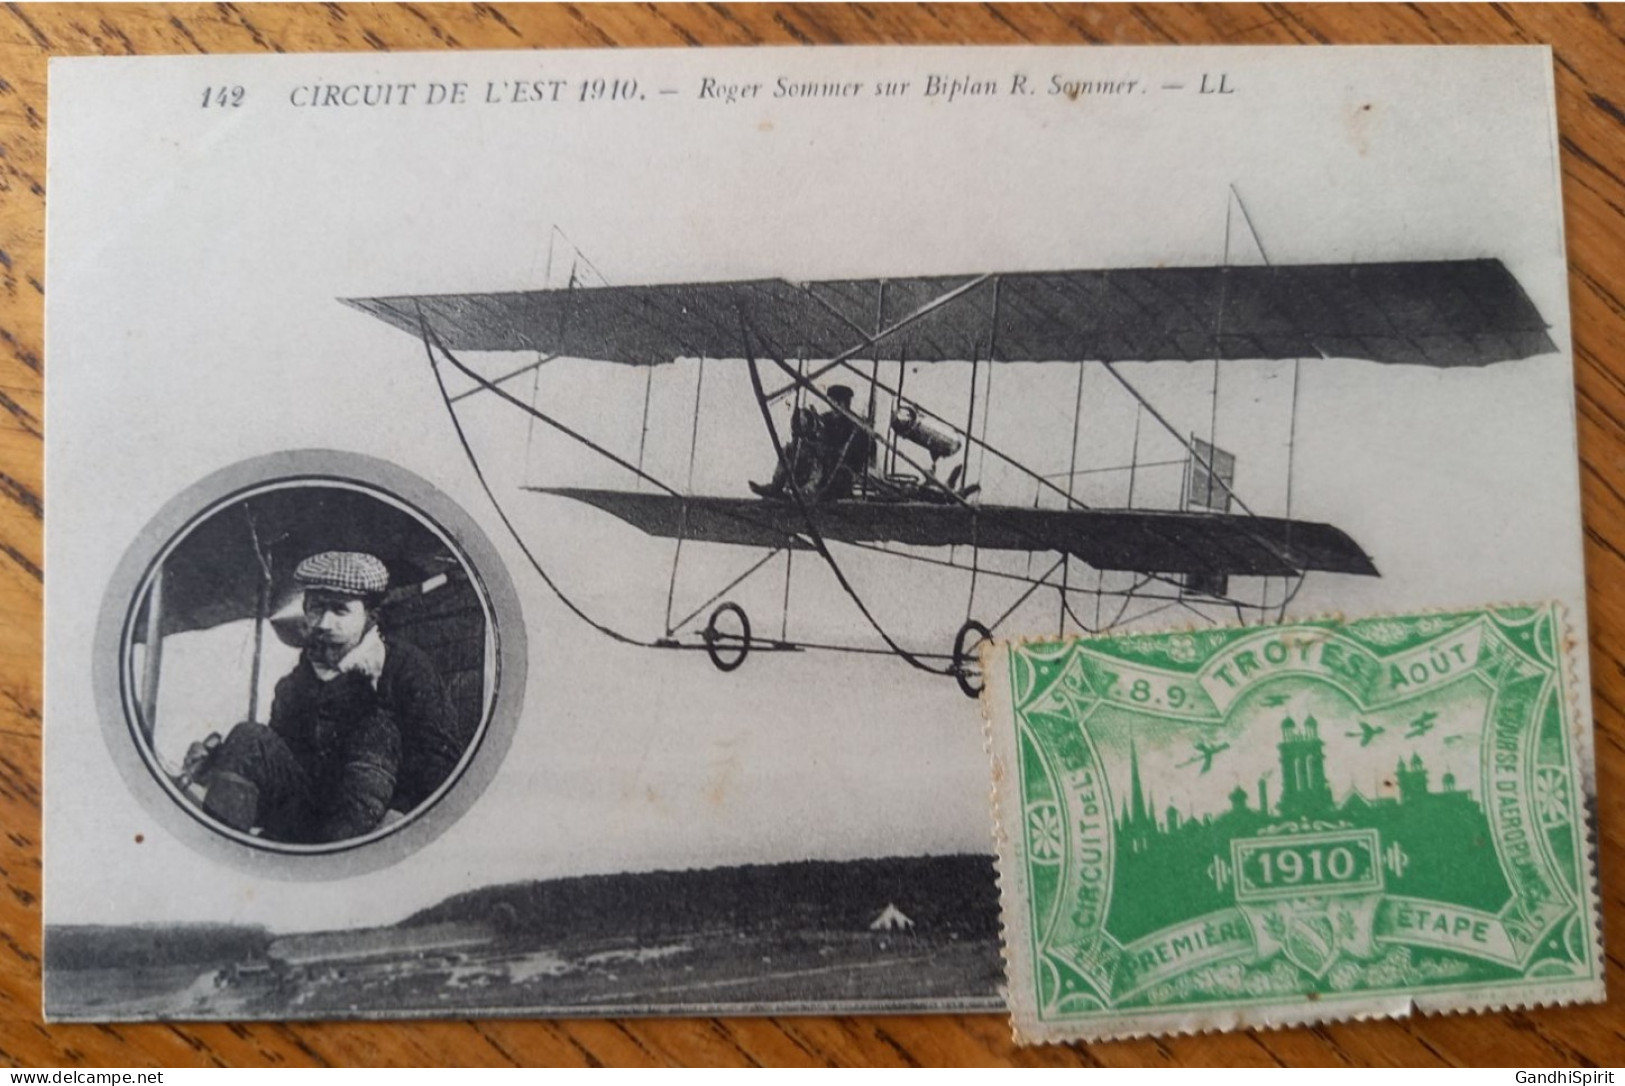 Errinophilie - Circuit De L'Est, Courses D'Aéroplanes, 1ère Première étape, Troyes 7.8.9. Aout 1910, Aviation - Luchtvaart